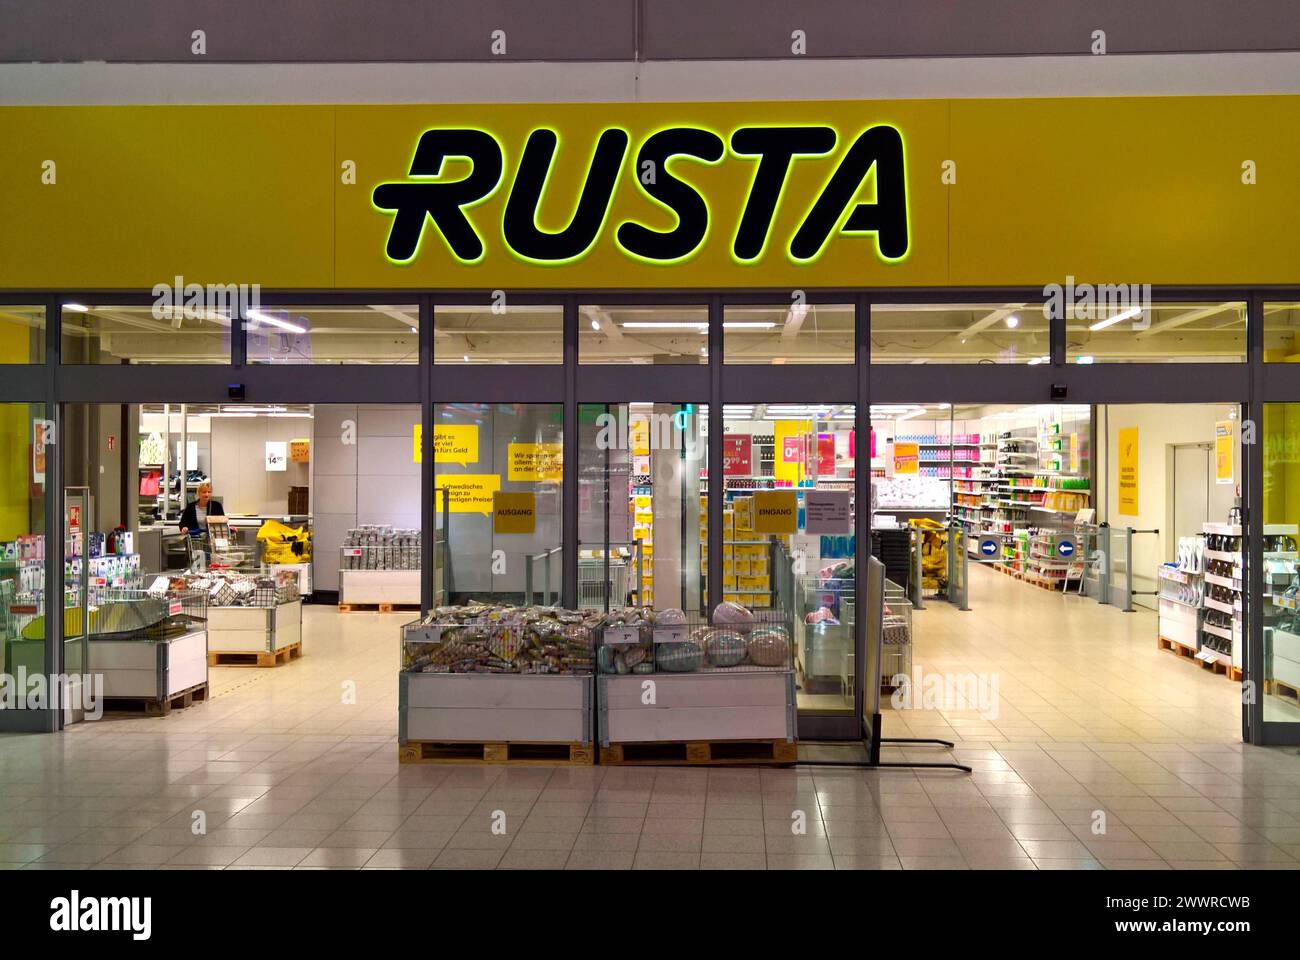 Rusta Store, Einzelhandel. Rusta ist ein schwedisches Einzelhandelsunternehmen, mit insgesamt 178 Filialen in Deutschland, Finnland, Norwegen und Schweden. Das auf Haushalts- und Freizeitartikel spezifizierte Unternehmen wurde 1986 von Anders Forsgren und Bengt-Olov Forssell im schwedischen Gävle gegründet. Heute befindet sich der Hauptsitz in Upplands Väsby, nördlich von Stockholm *** Rusta Store, retail Rusta is a Swedish retail company with a total of 178 stores in Germany, Finland, Norway and Sweden The company, which specializes in household and leisure products, was founded in 1986 by An Stock Photo